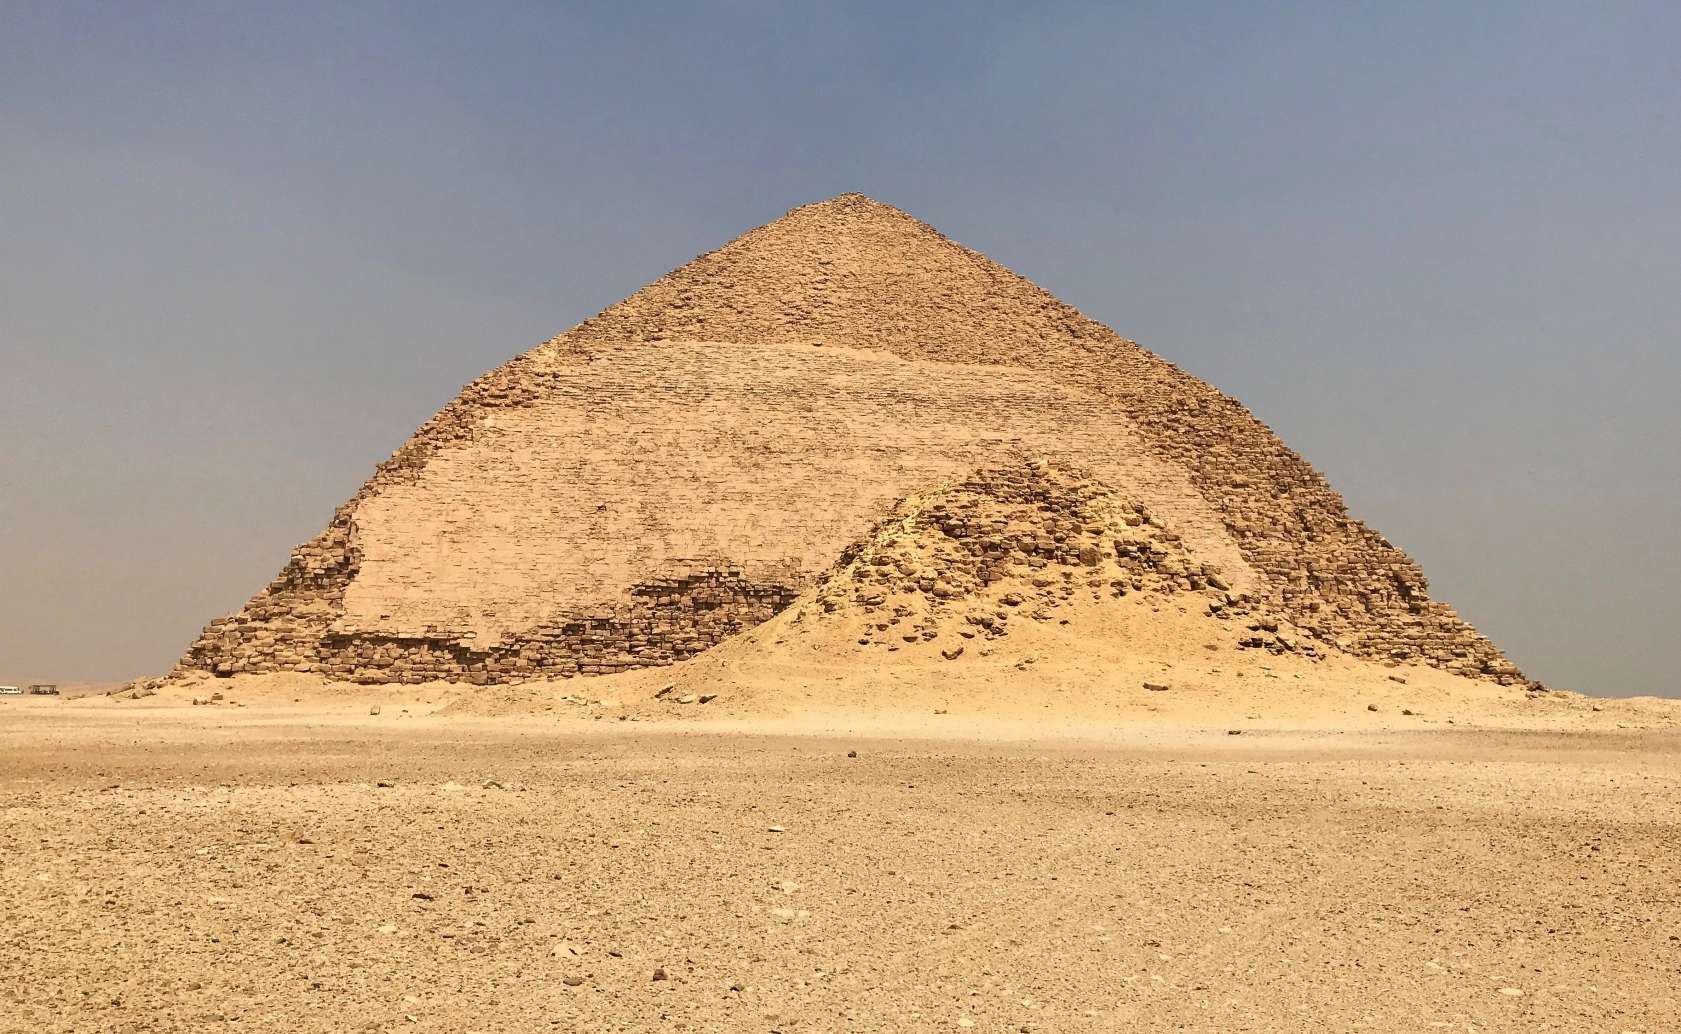 La pirámide doblada, Dahshur, Egipto.